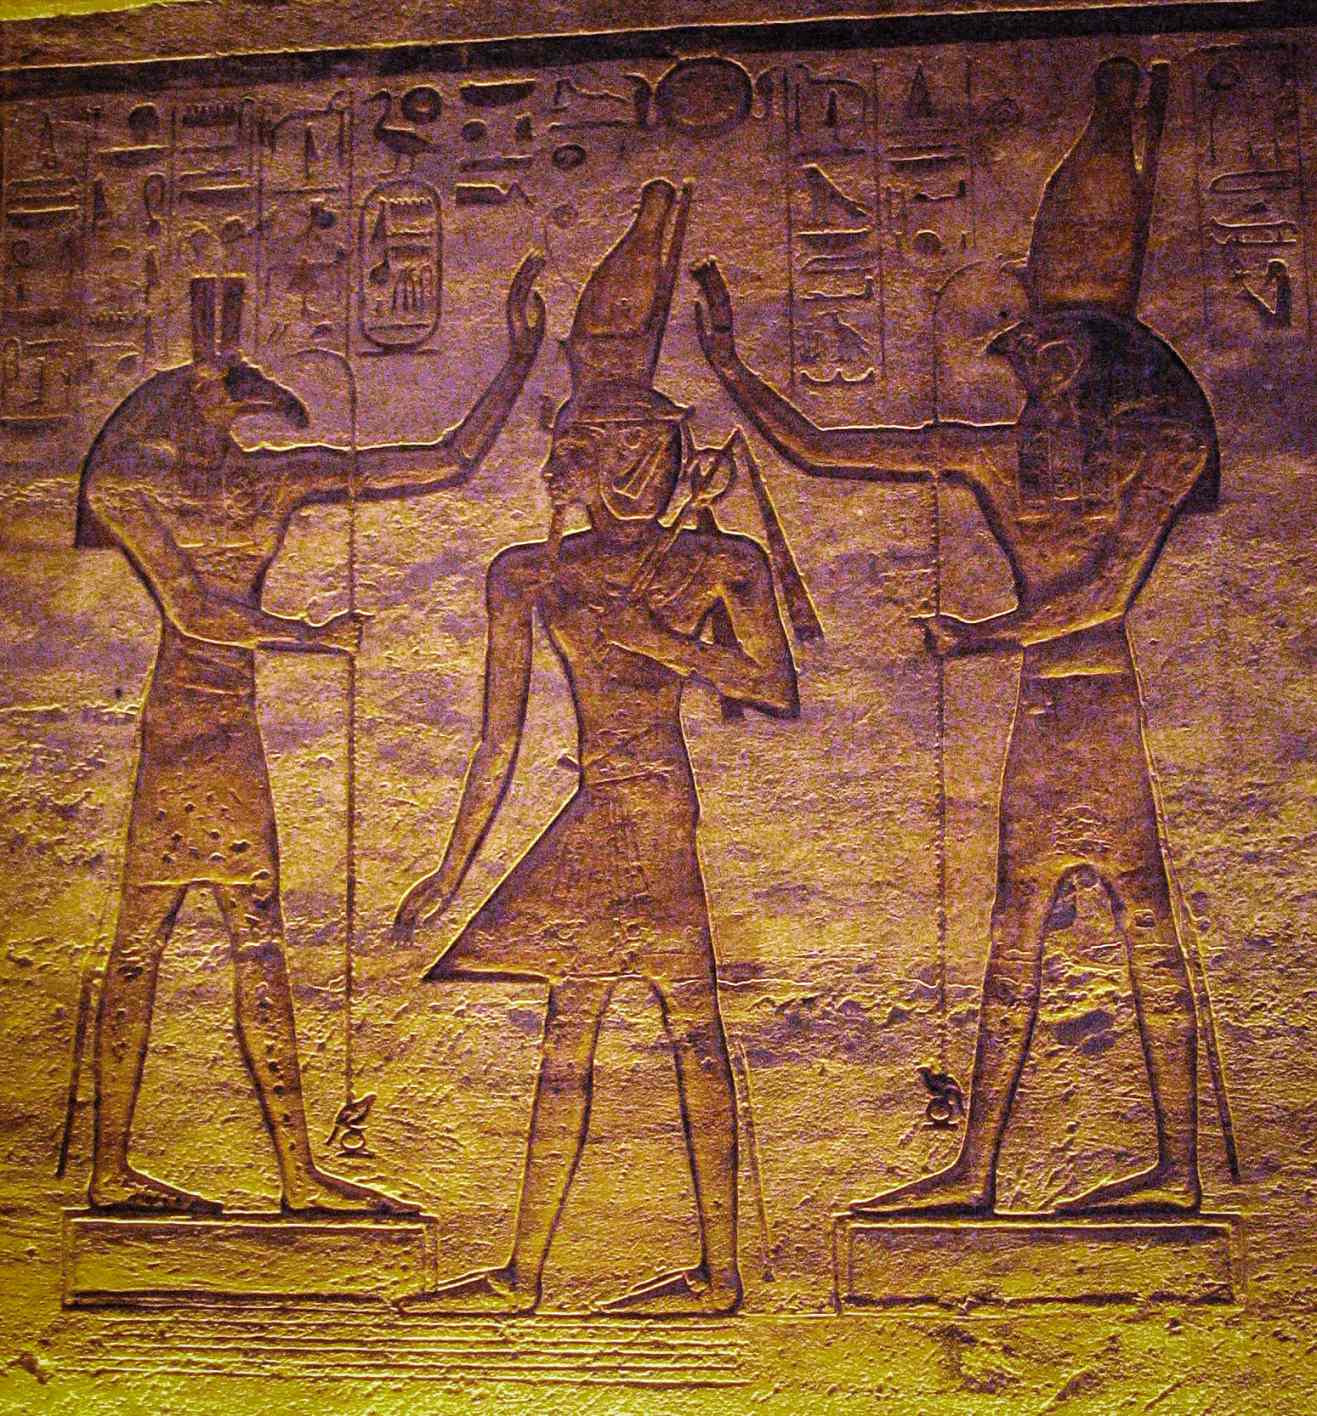 Set (Seth) na Horus wakiabudu Ramesses. Utafiti wa sasa unaonyesha kuwa mwezi unaweza kuwakilishwa na Seth na nyota inayobadilika Algol na Horus katika Kalenda ya Cairo.